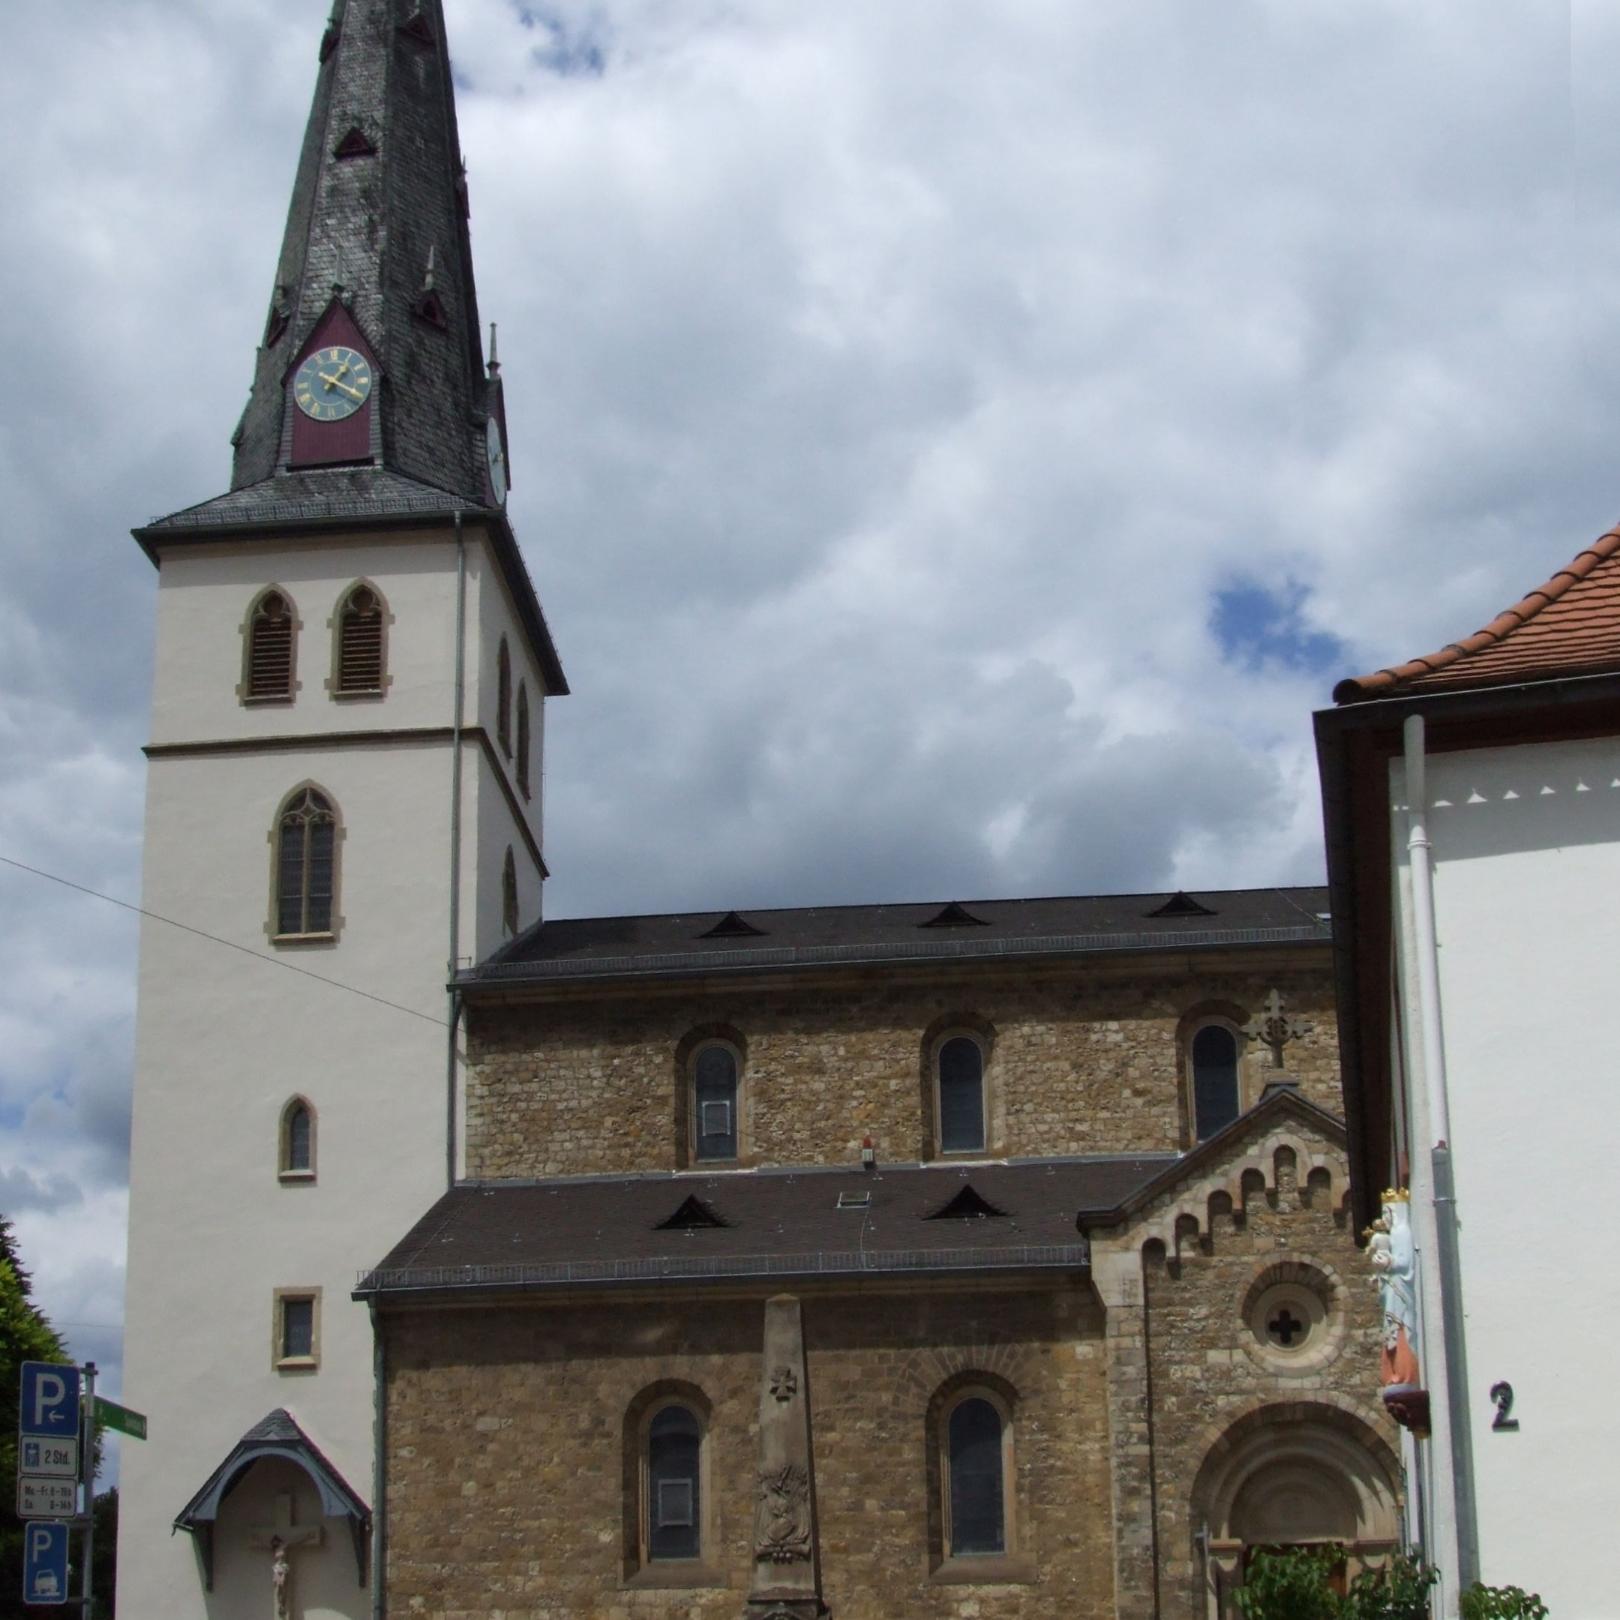 Pfarrkirche St. Martin (c) Von Ingo Schlösser, Mainz-Finthen - Ingo Schlösser, Mainz-Finthen, CC-by-sa 2.0/de, https://de.wikipedia.org/w/index.php?curid=3714181